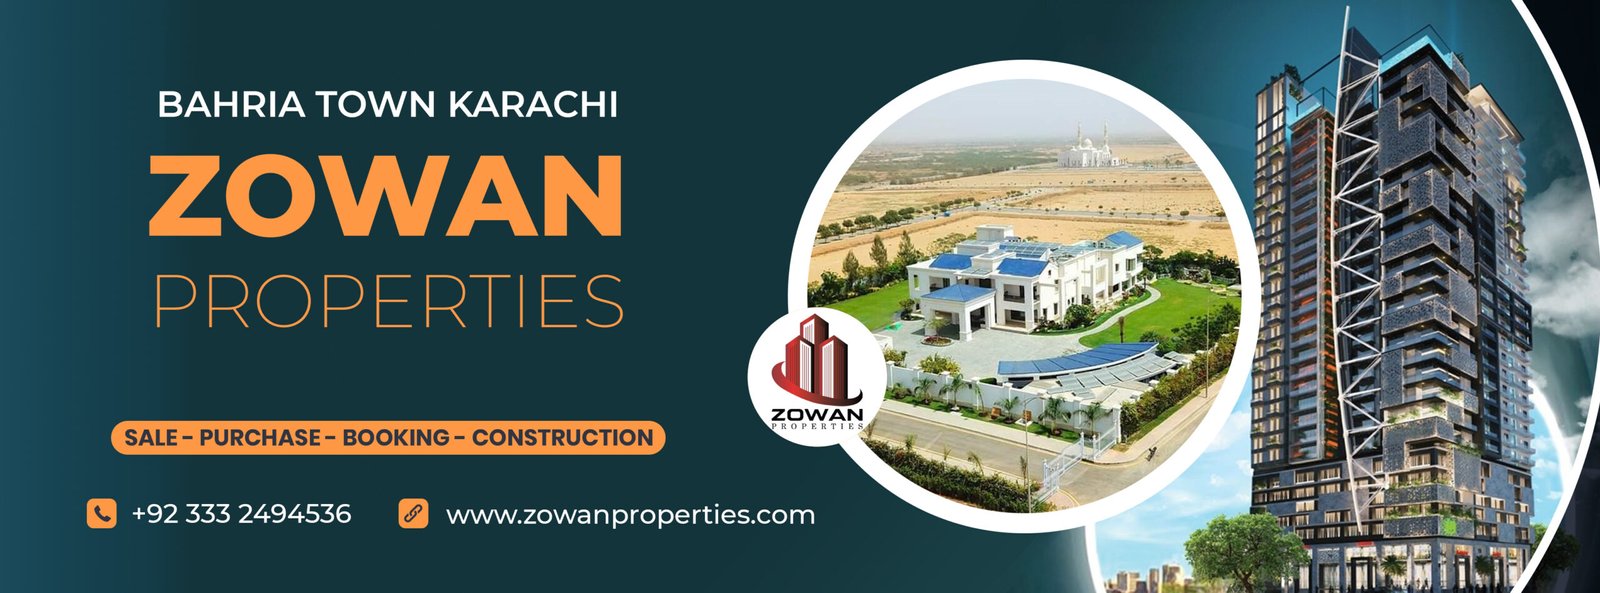 Zowan_Properties_Cover